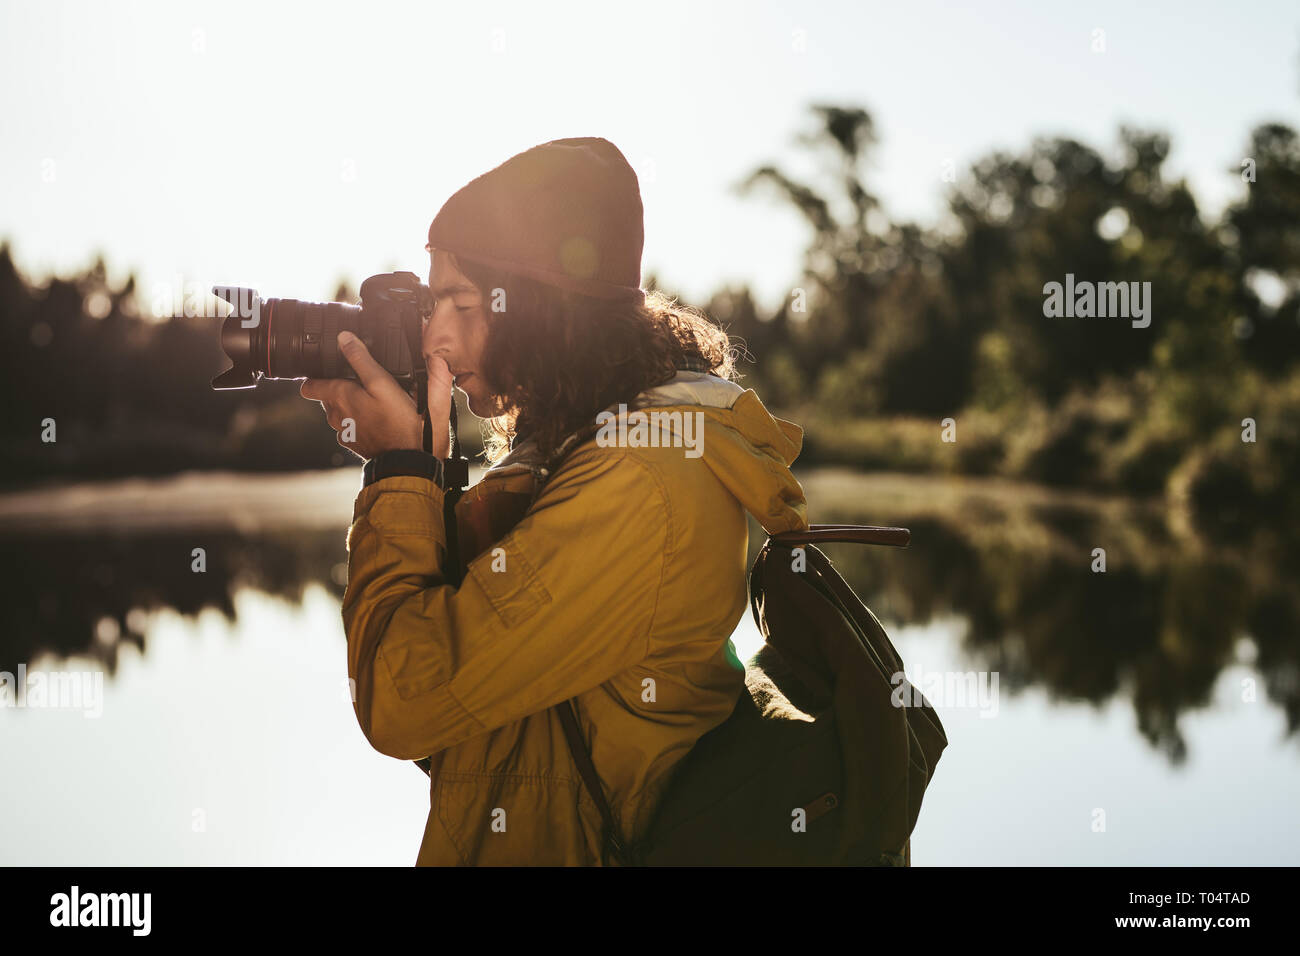 Turista tomando una foto con una cámara DSLR. Vista lateral de un viajero busca en su cámara digital para tomar una foto. Foto de stock